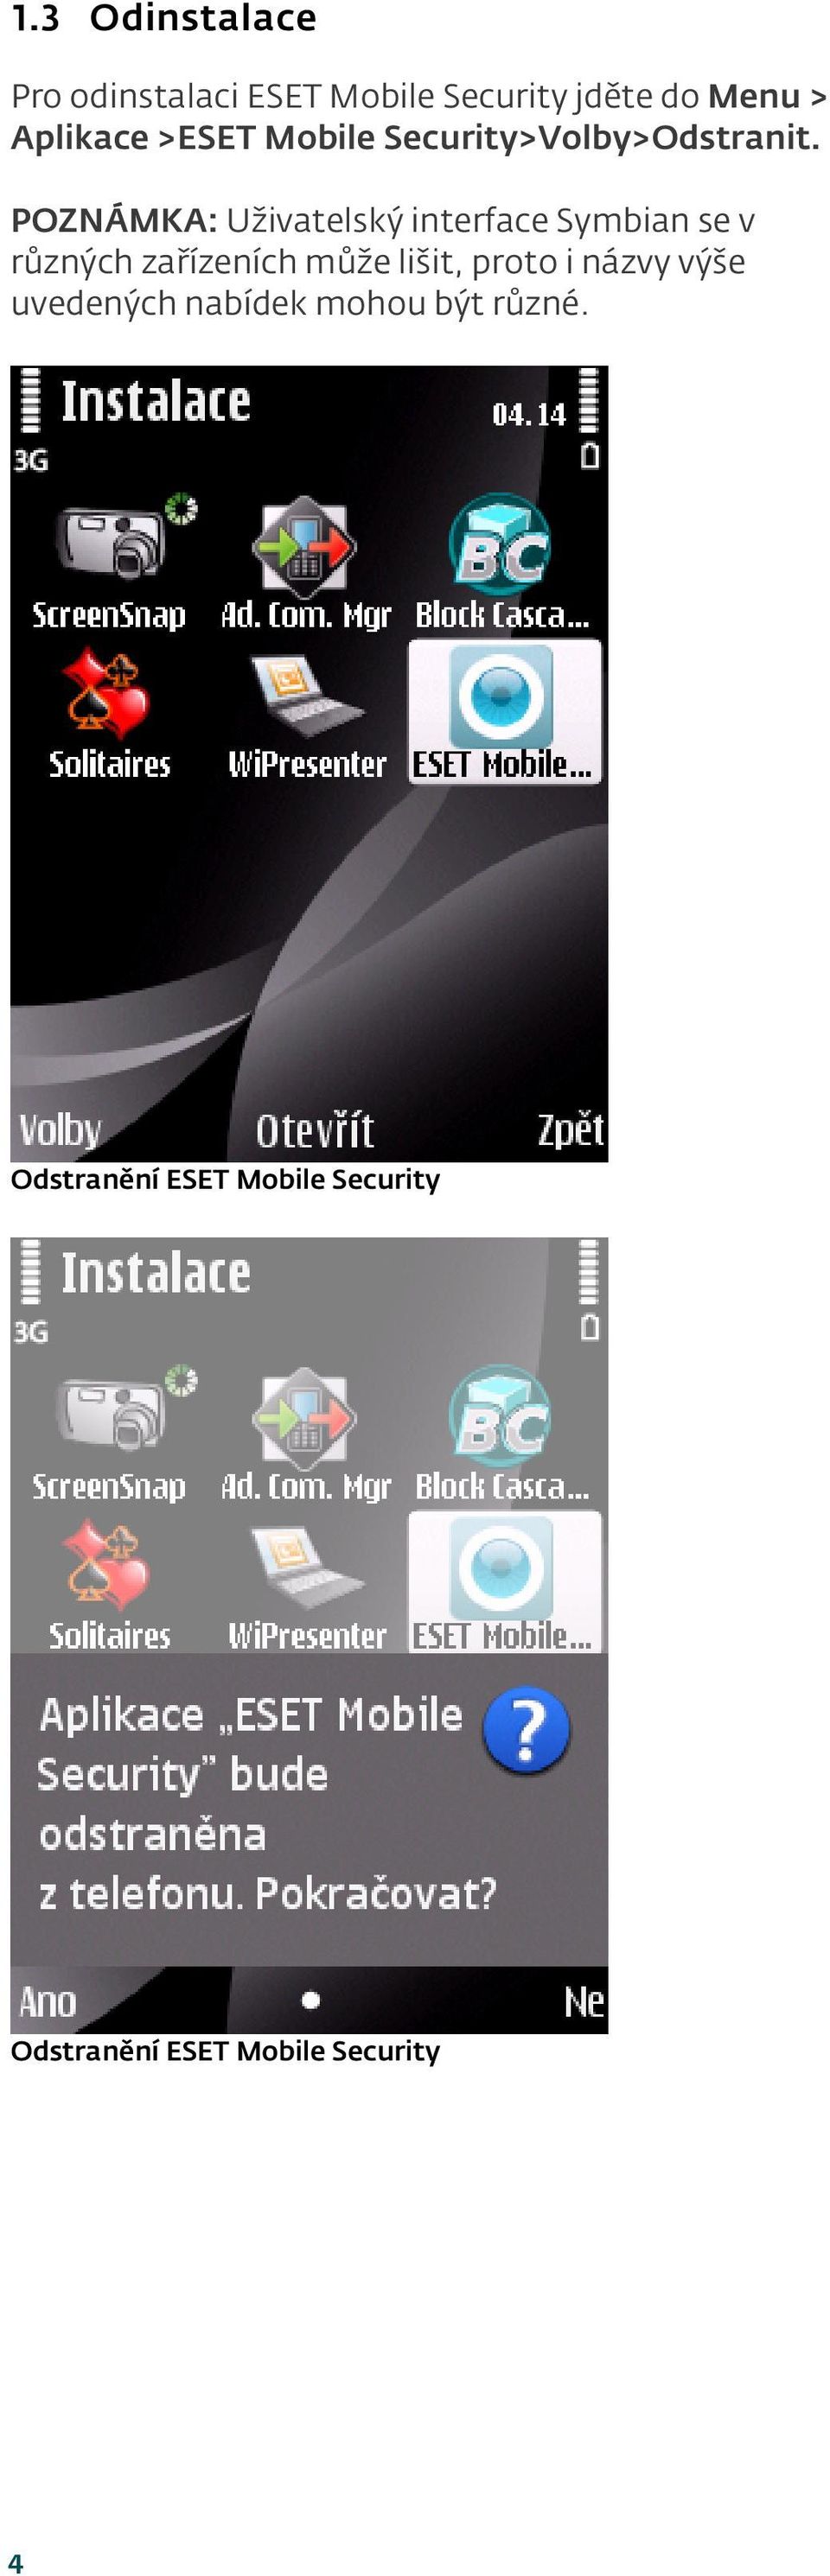 POZNÁMKA: Uživatelský interface Symbian se v různých zařízeních může lišit,